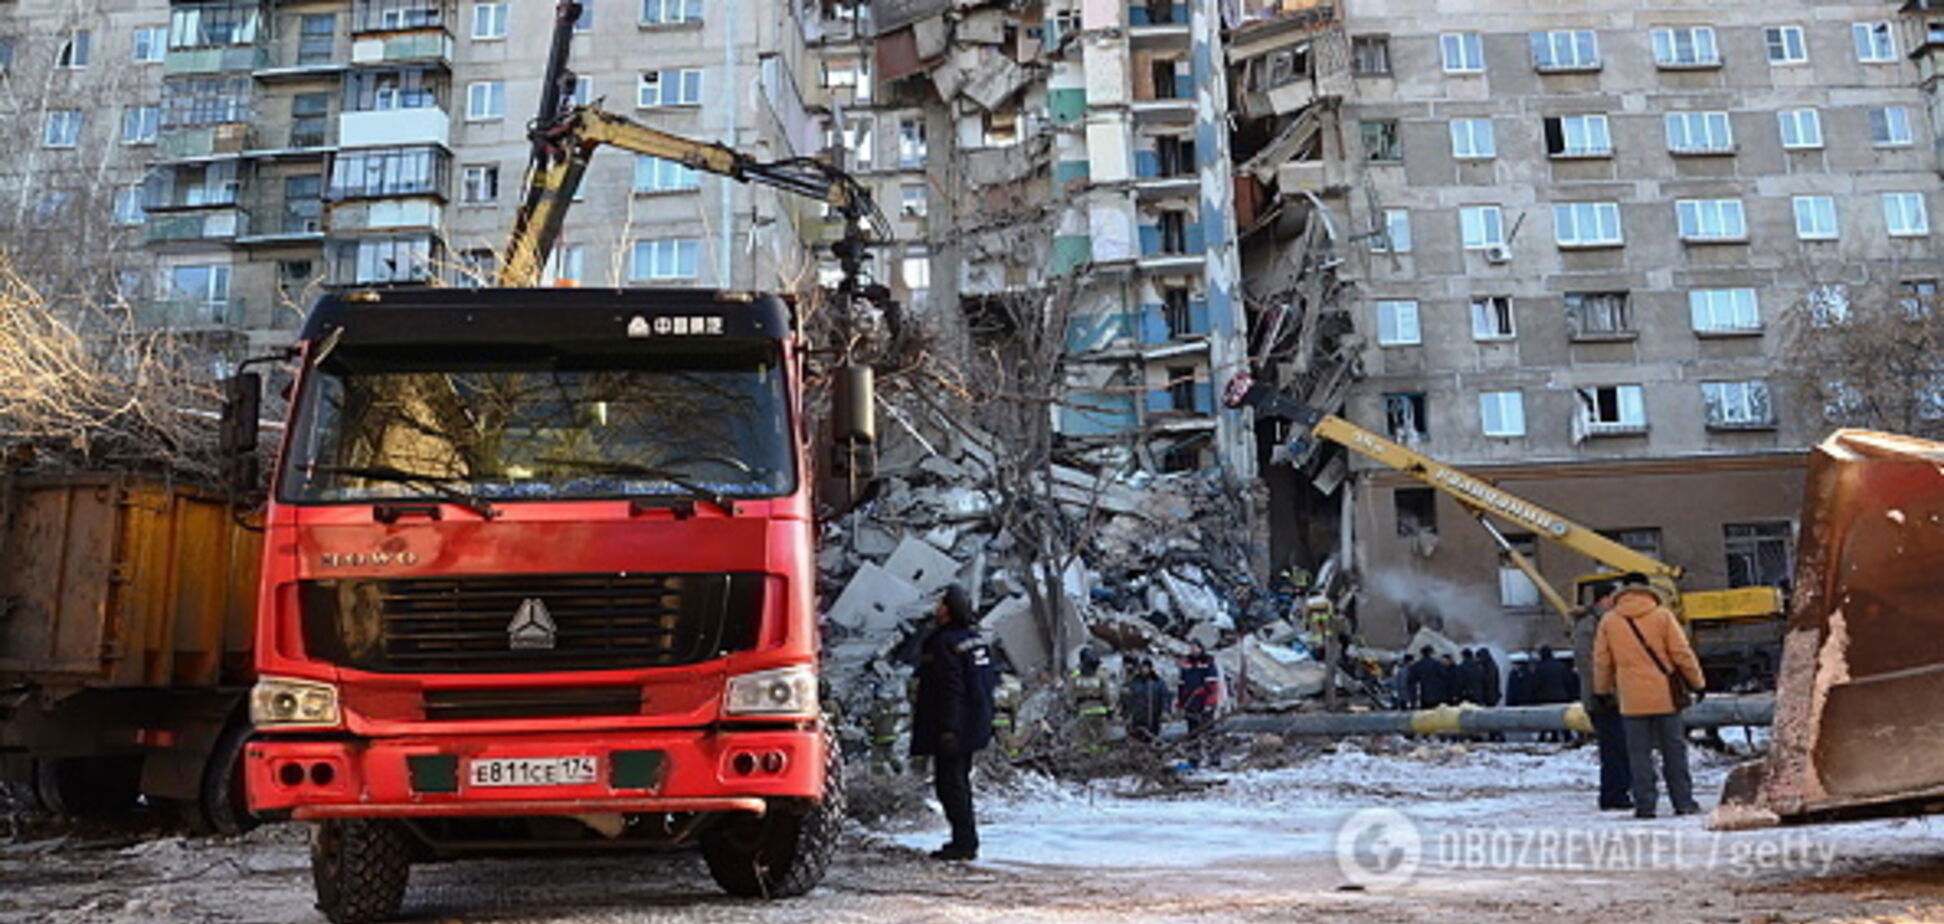 Жильцы взорванного дома в Магнитогорске попали в новое ЧП: фото и подробности